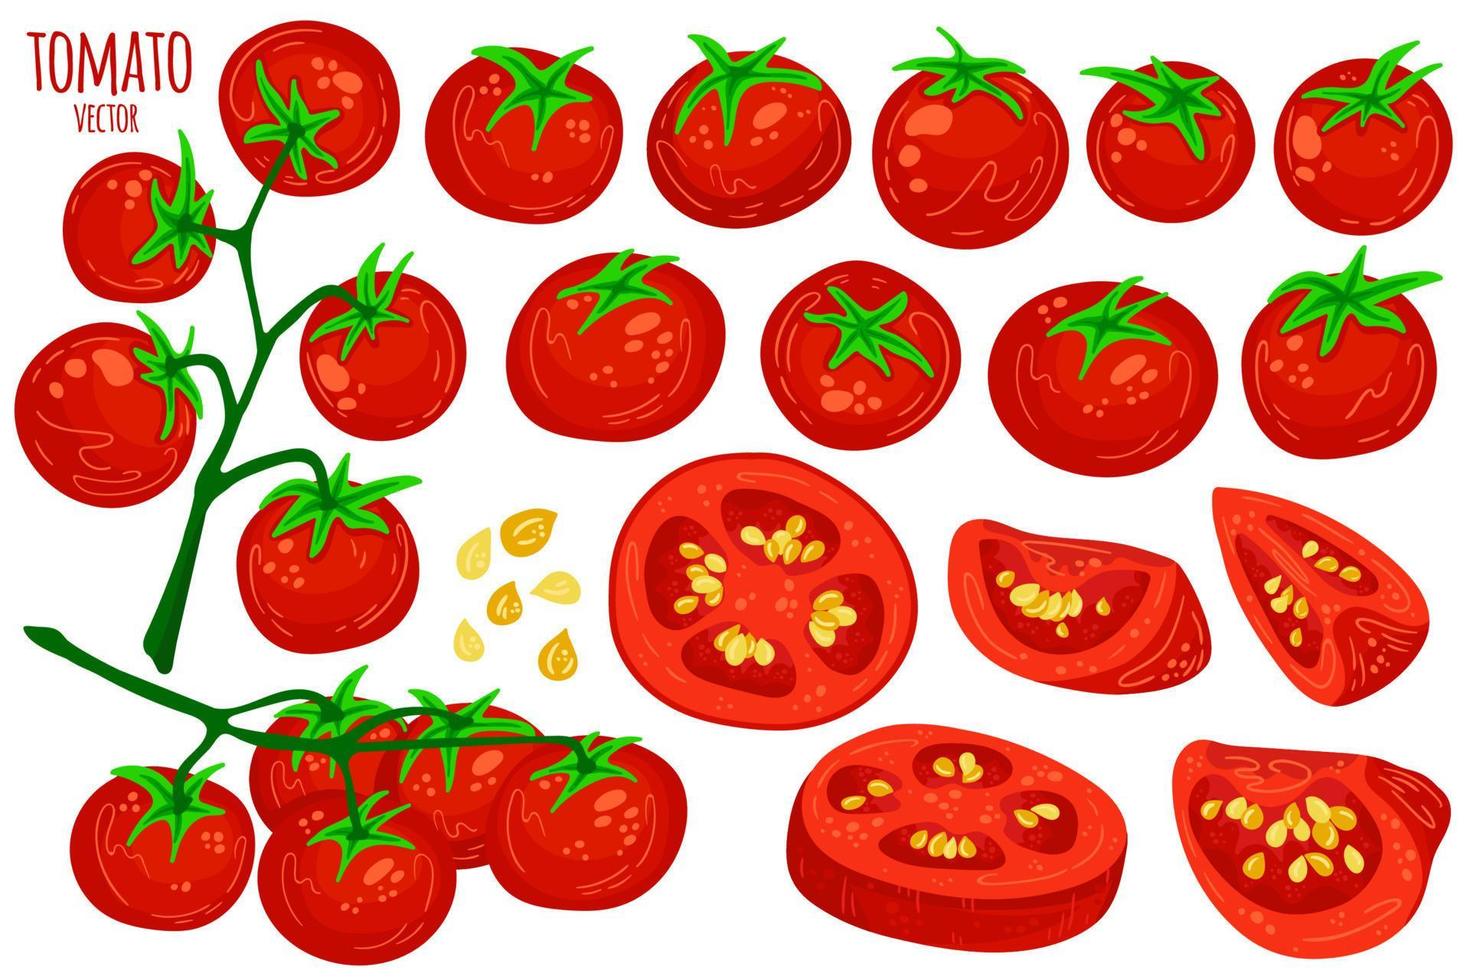 conjunto de tomates vermelhos saudáveis frescos isolados no branco. inteiro, fatiado, quarto, metade de uma fruta de tomate. vegetal da fazenda. comida orgânica. estilo simples dos desenhos animados simples, ilustração vetorial. vetor